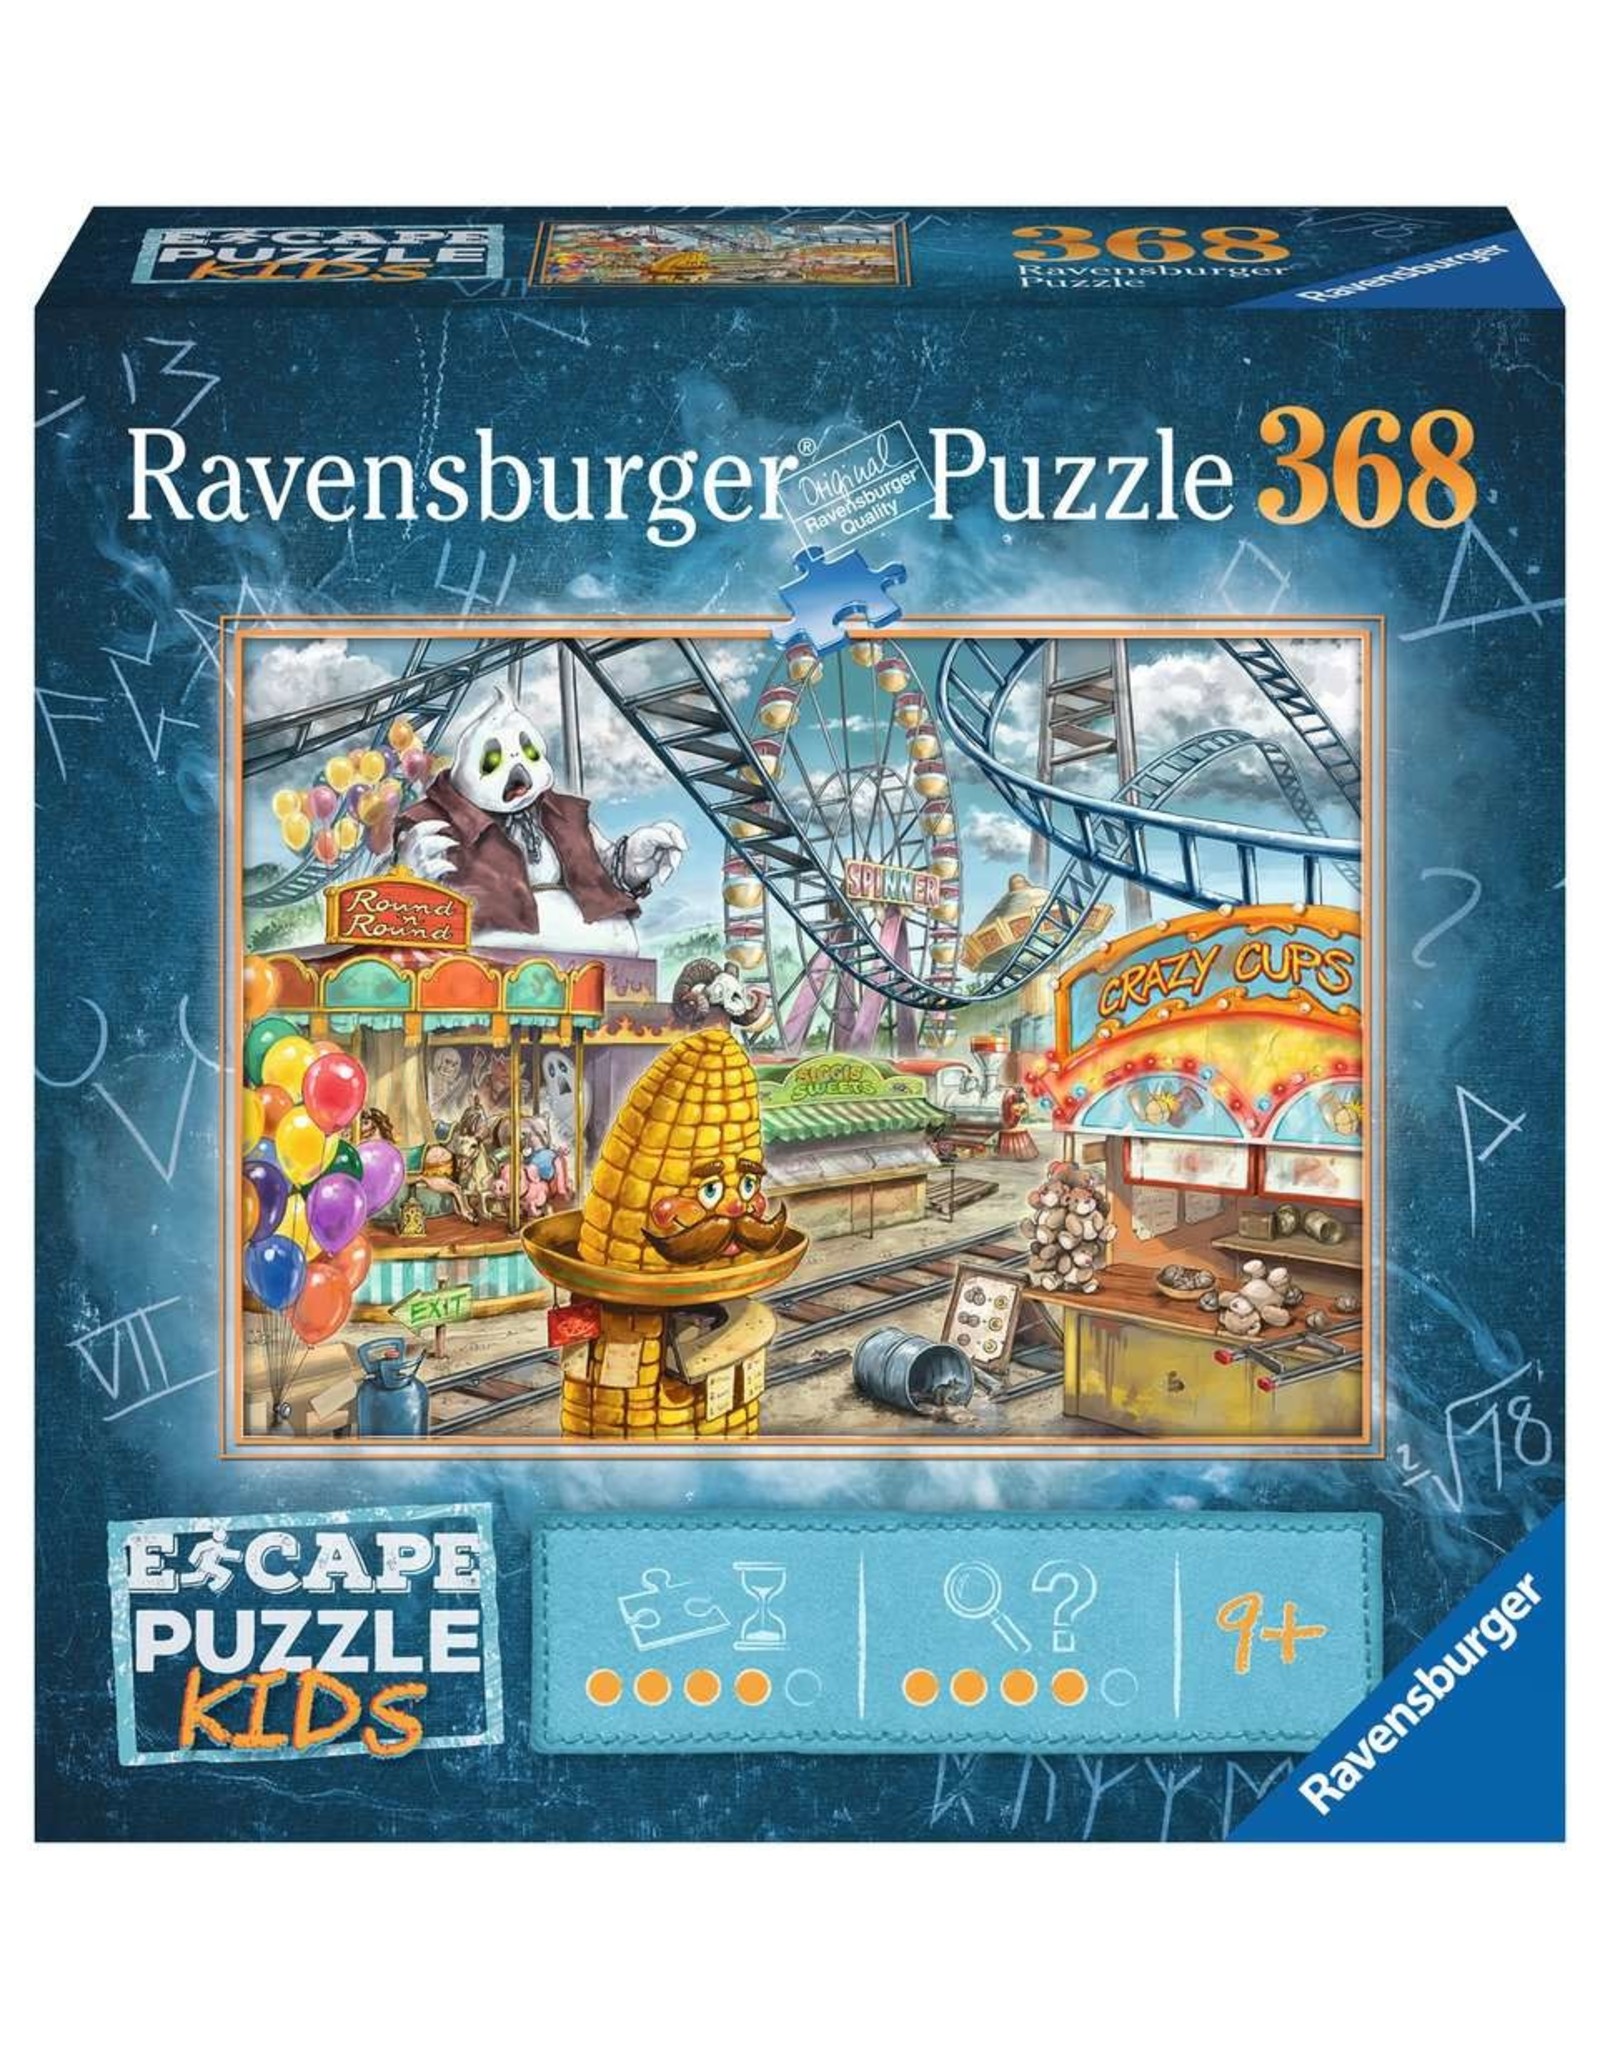 Ravensburger Escape Puzzle KIDS Amusement Park Plight  368pcs